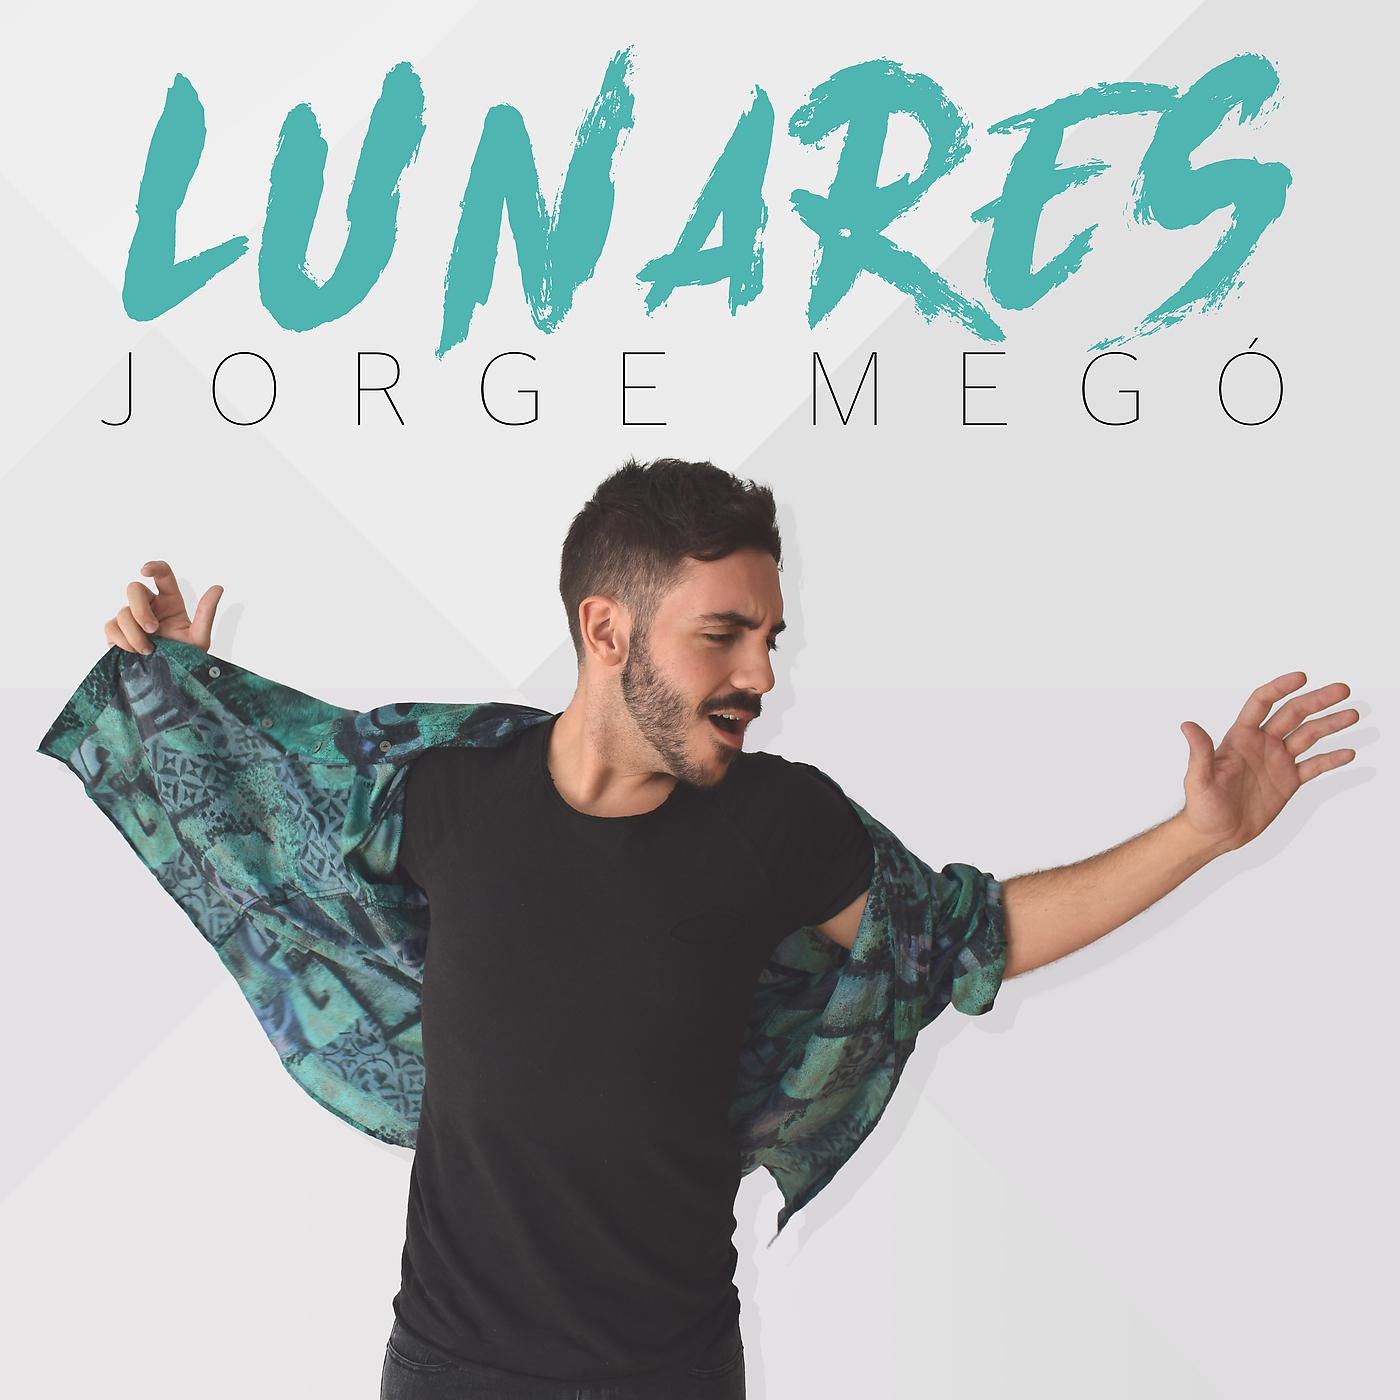 Постер альбома Lunares